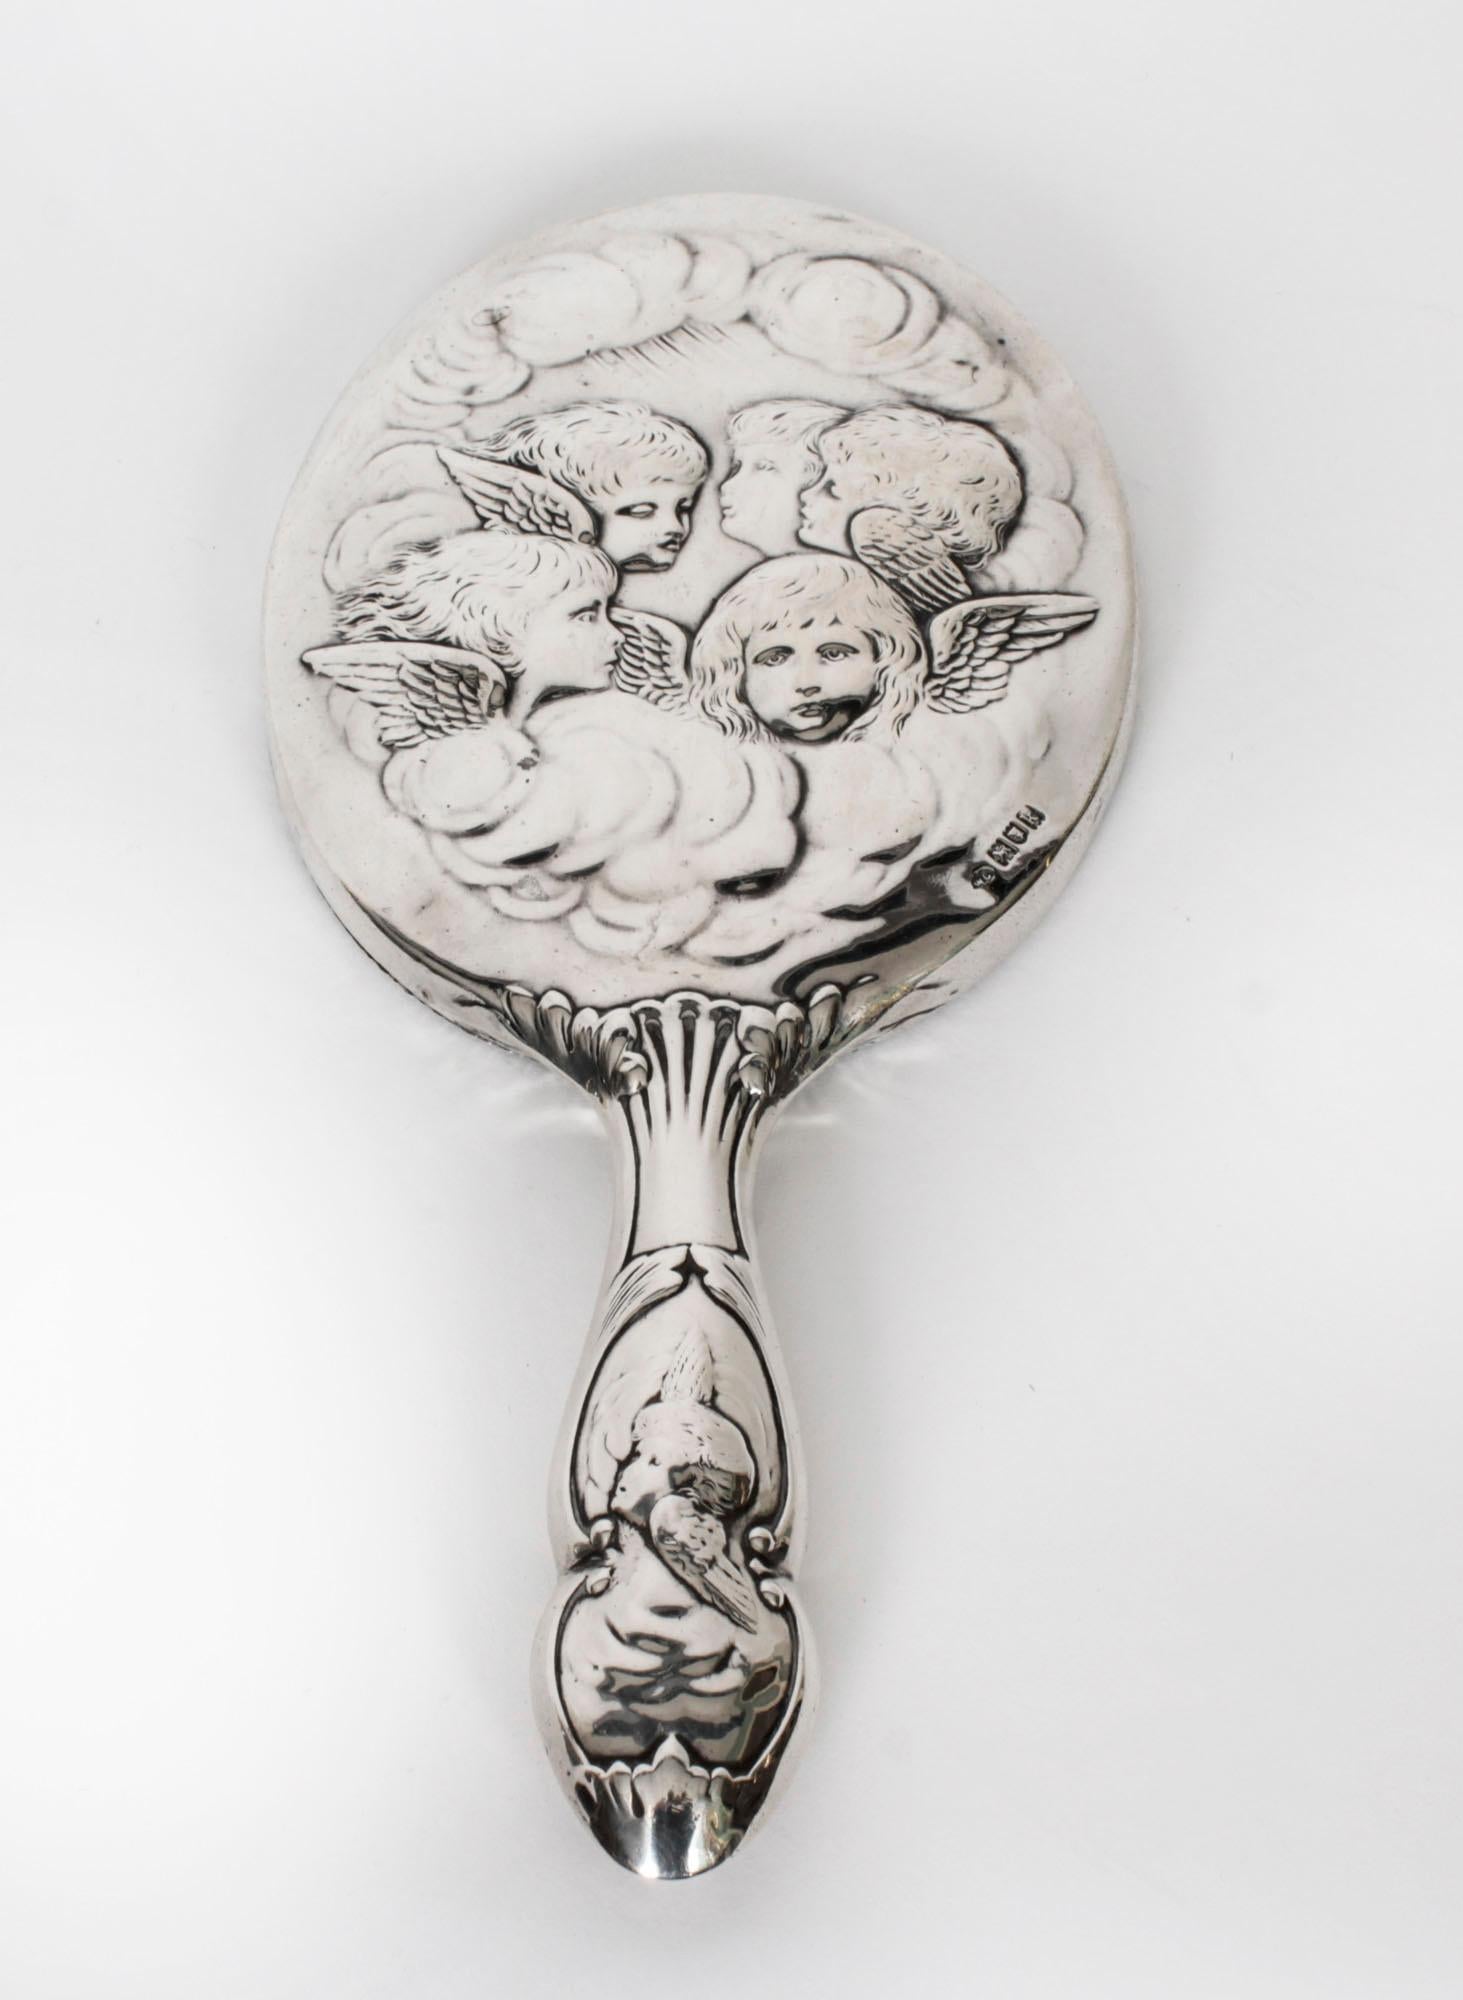 Il s'agit d'un superbe miroir à main anglais en argent ancien, poinçonné à Londres en 1905 et portant la marque du célèbre orfèvre William Comyns and Sons.
 
Le miroir présente un verre biseauté ovale avec un bord perlé et est décoré de portraits de